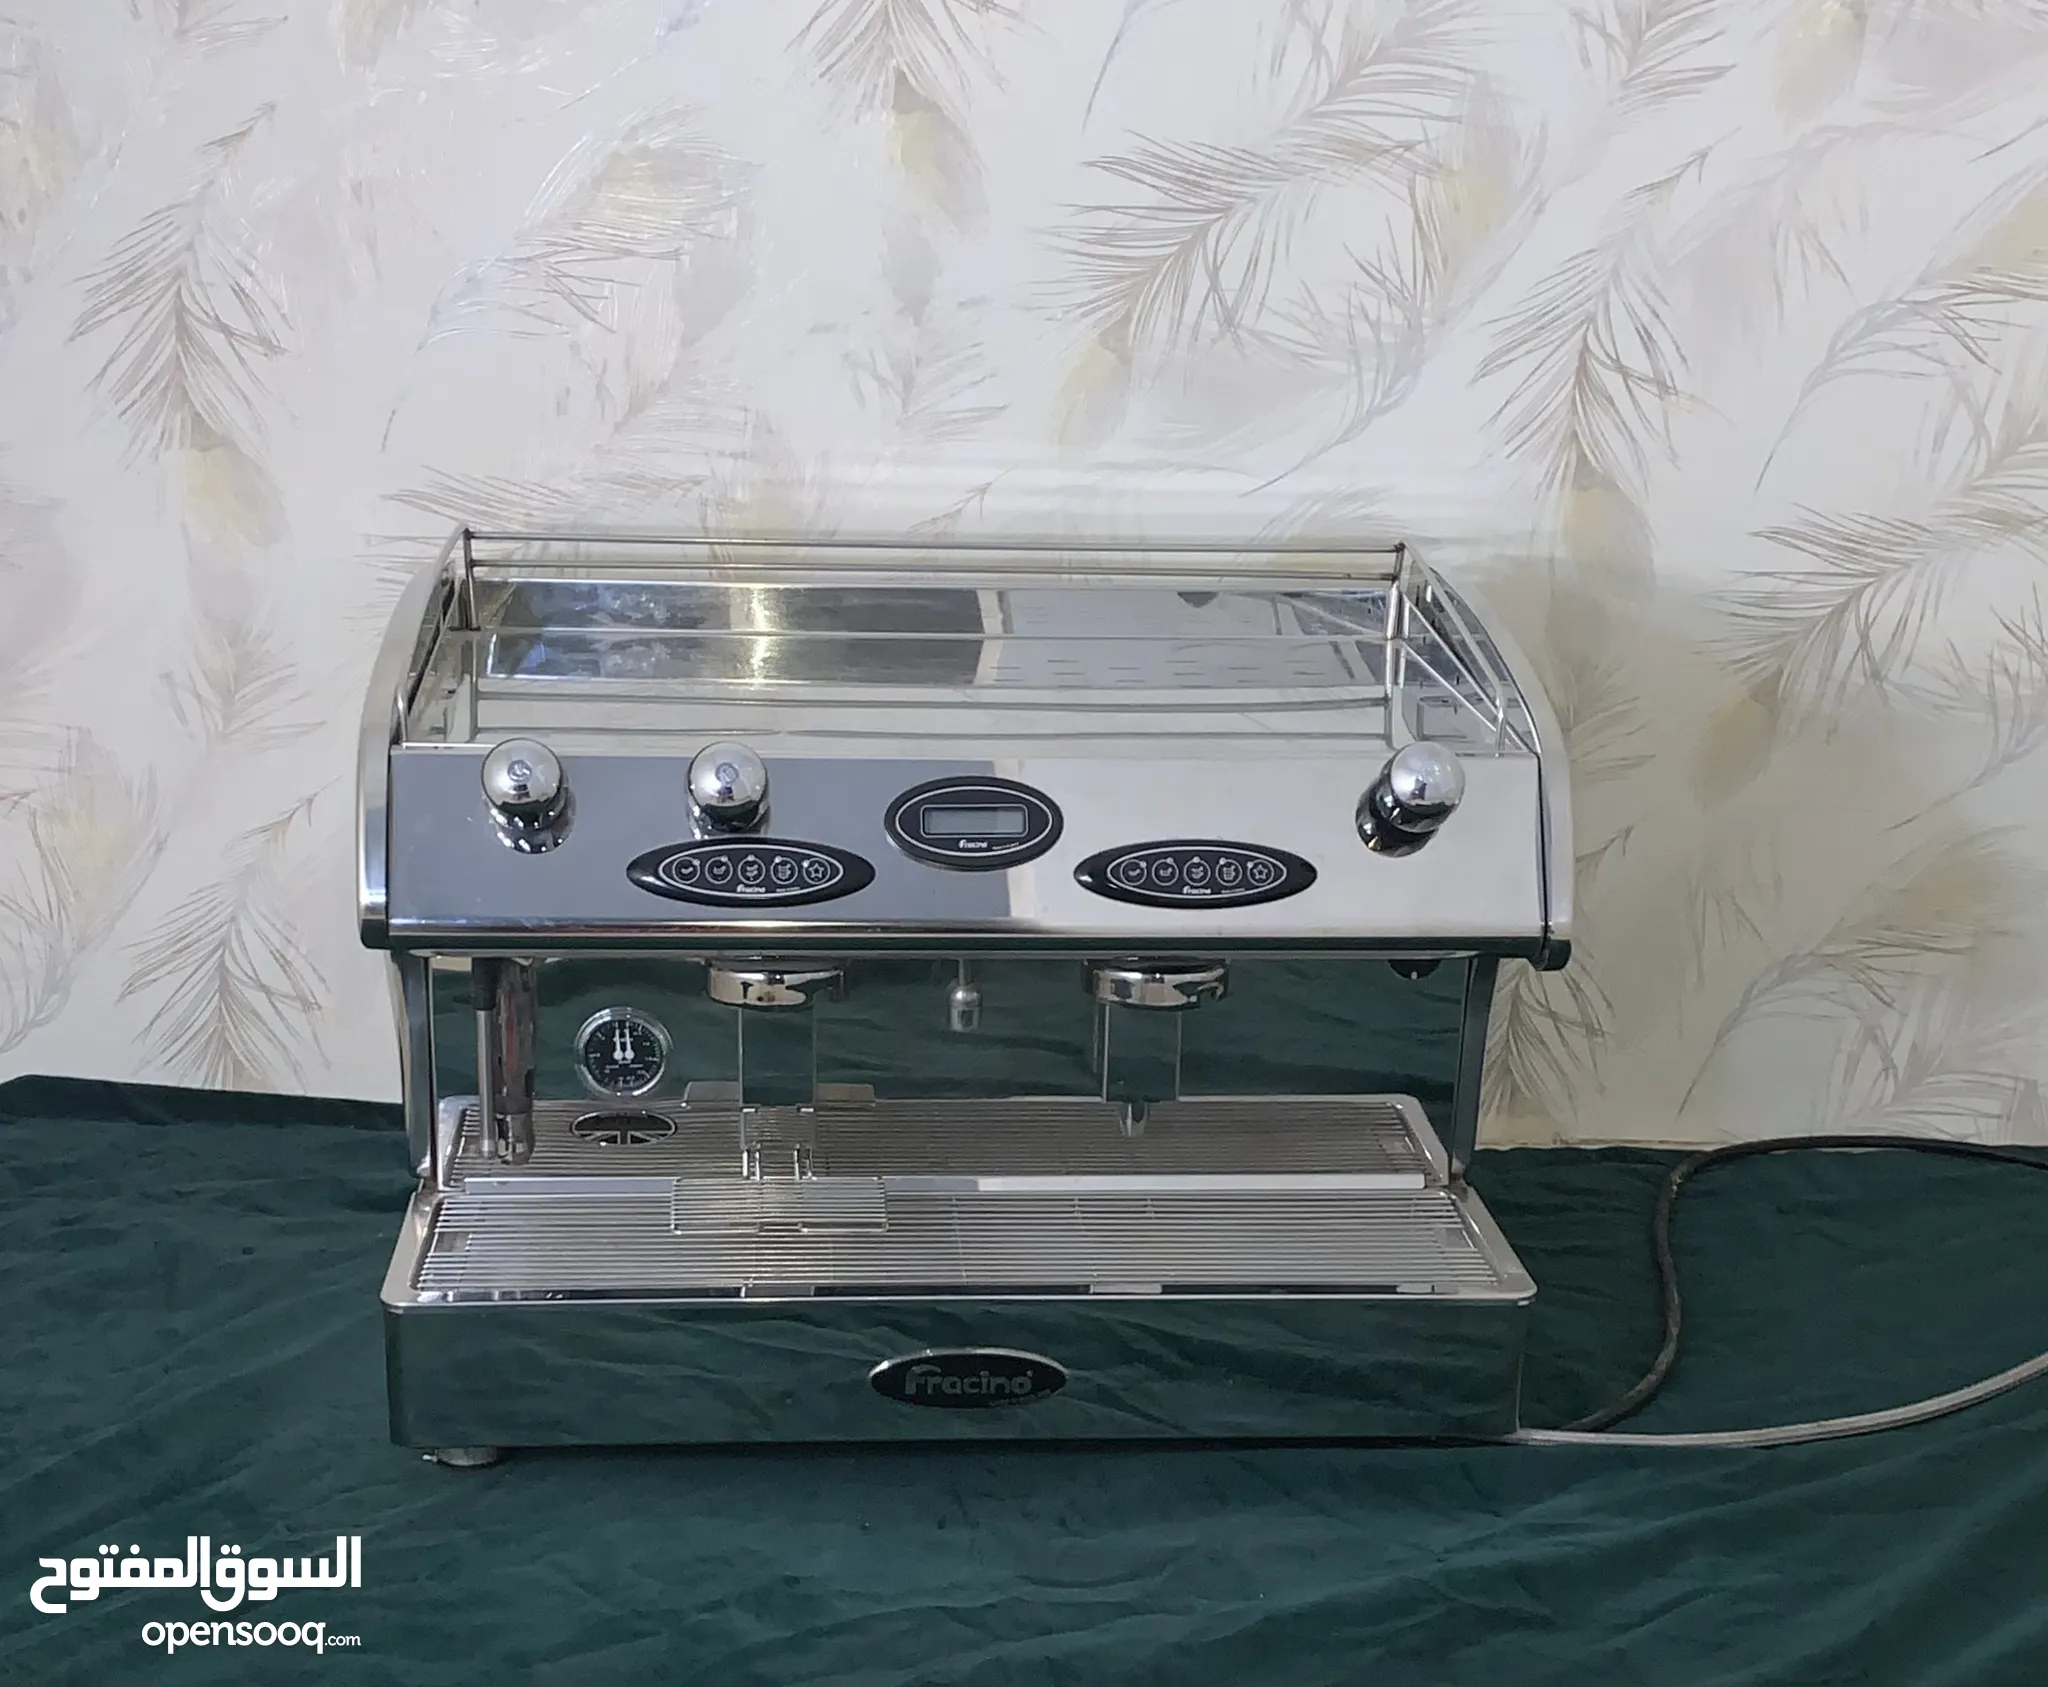 ماكينات صنع القهوة للبيع في أبو ظبي : افضل سعر | السوق المفتوح